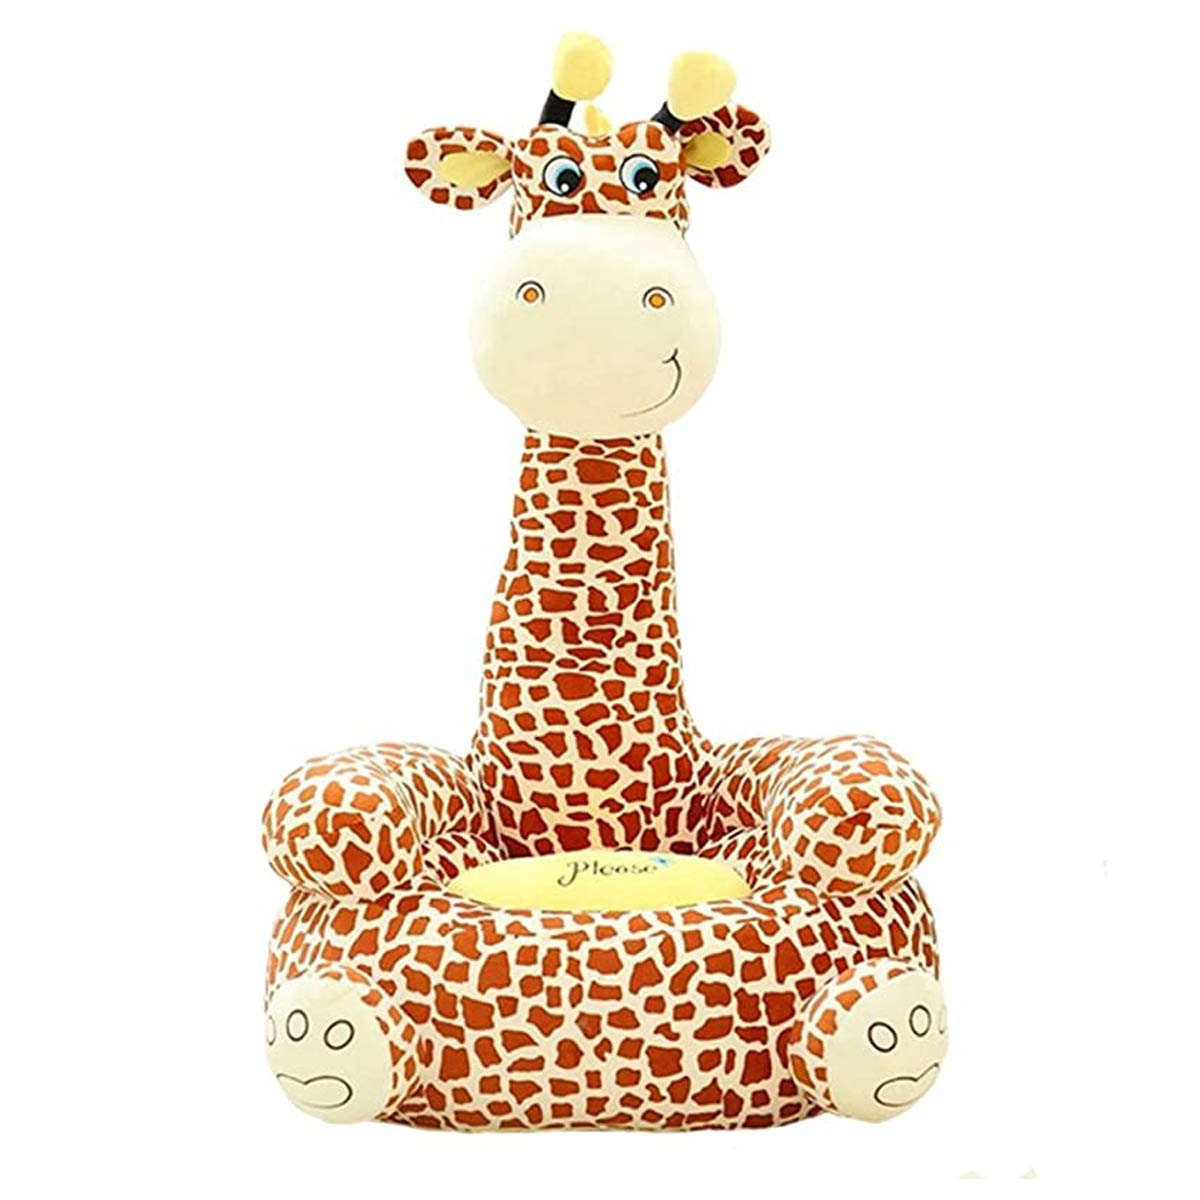  Sophie La Girafe - Mordedera en forma de jirafa para regalo y  premio : Bebés